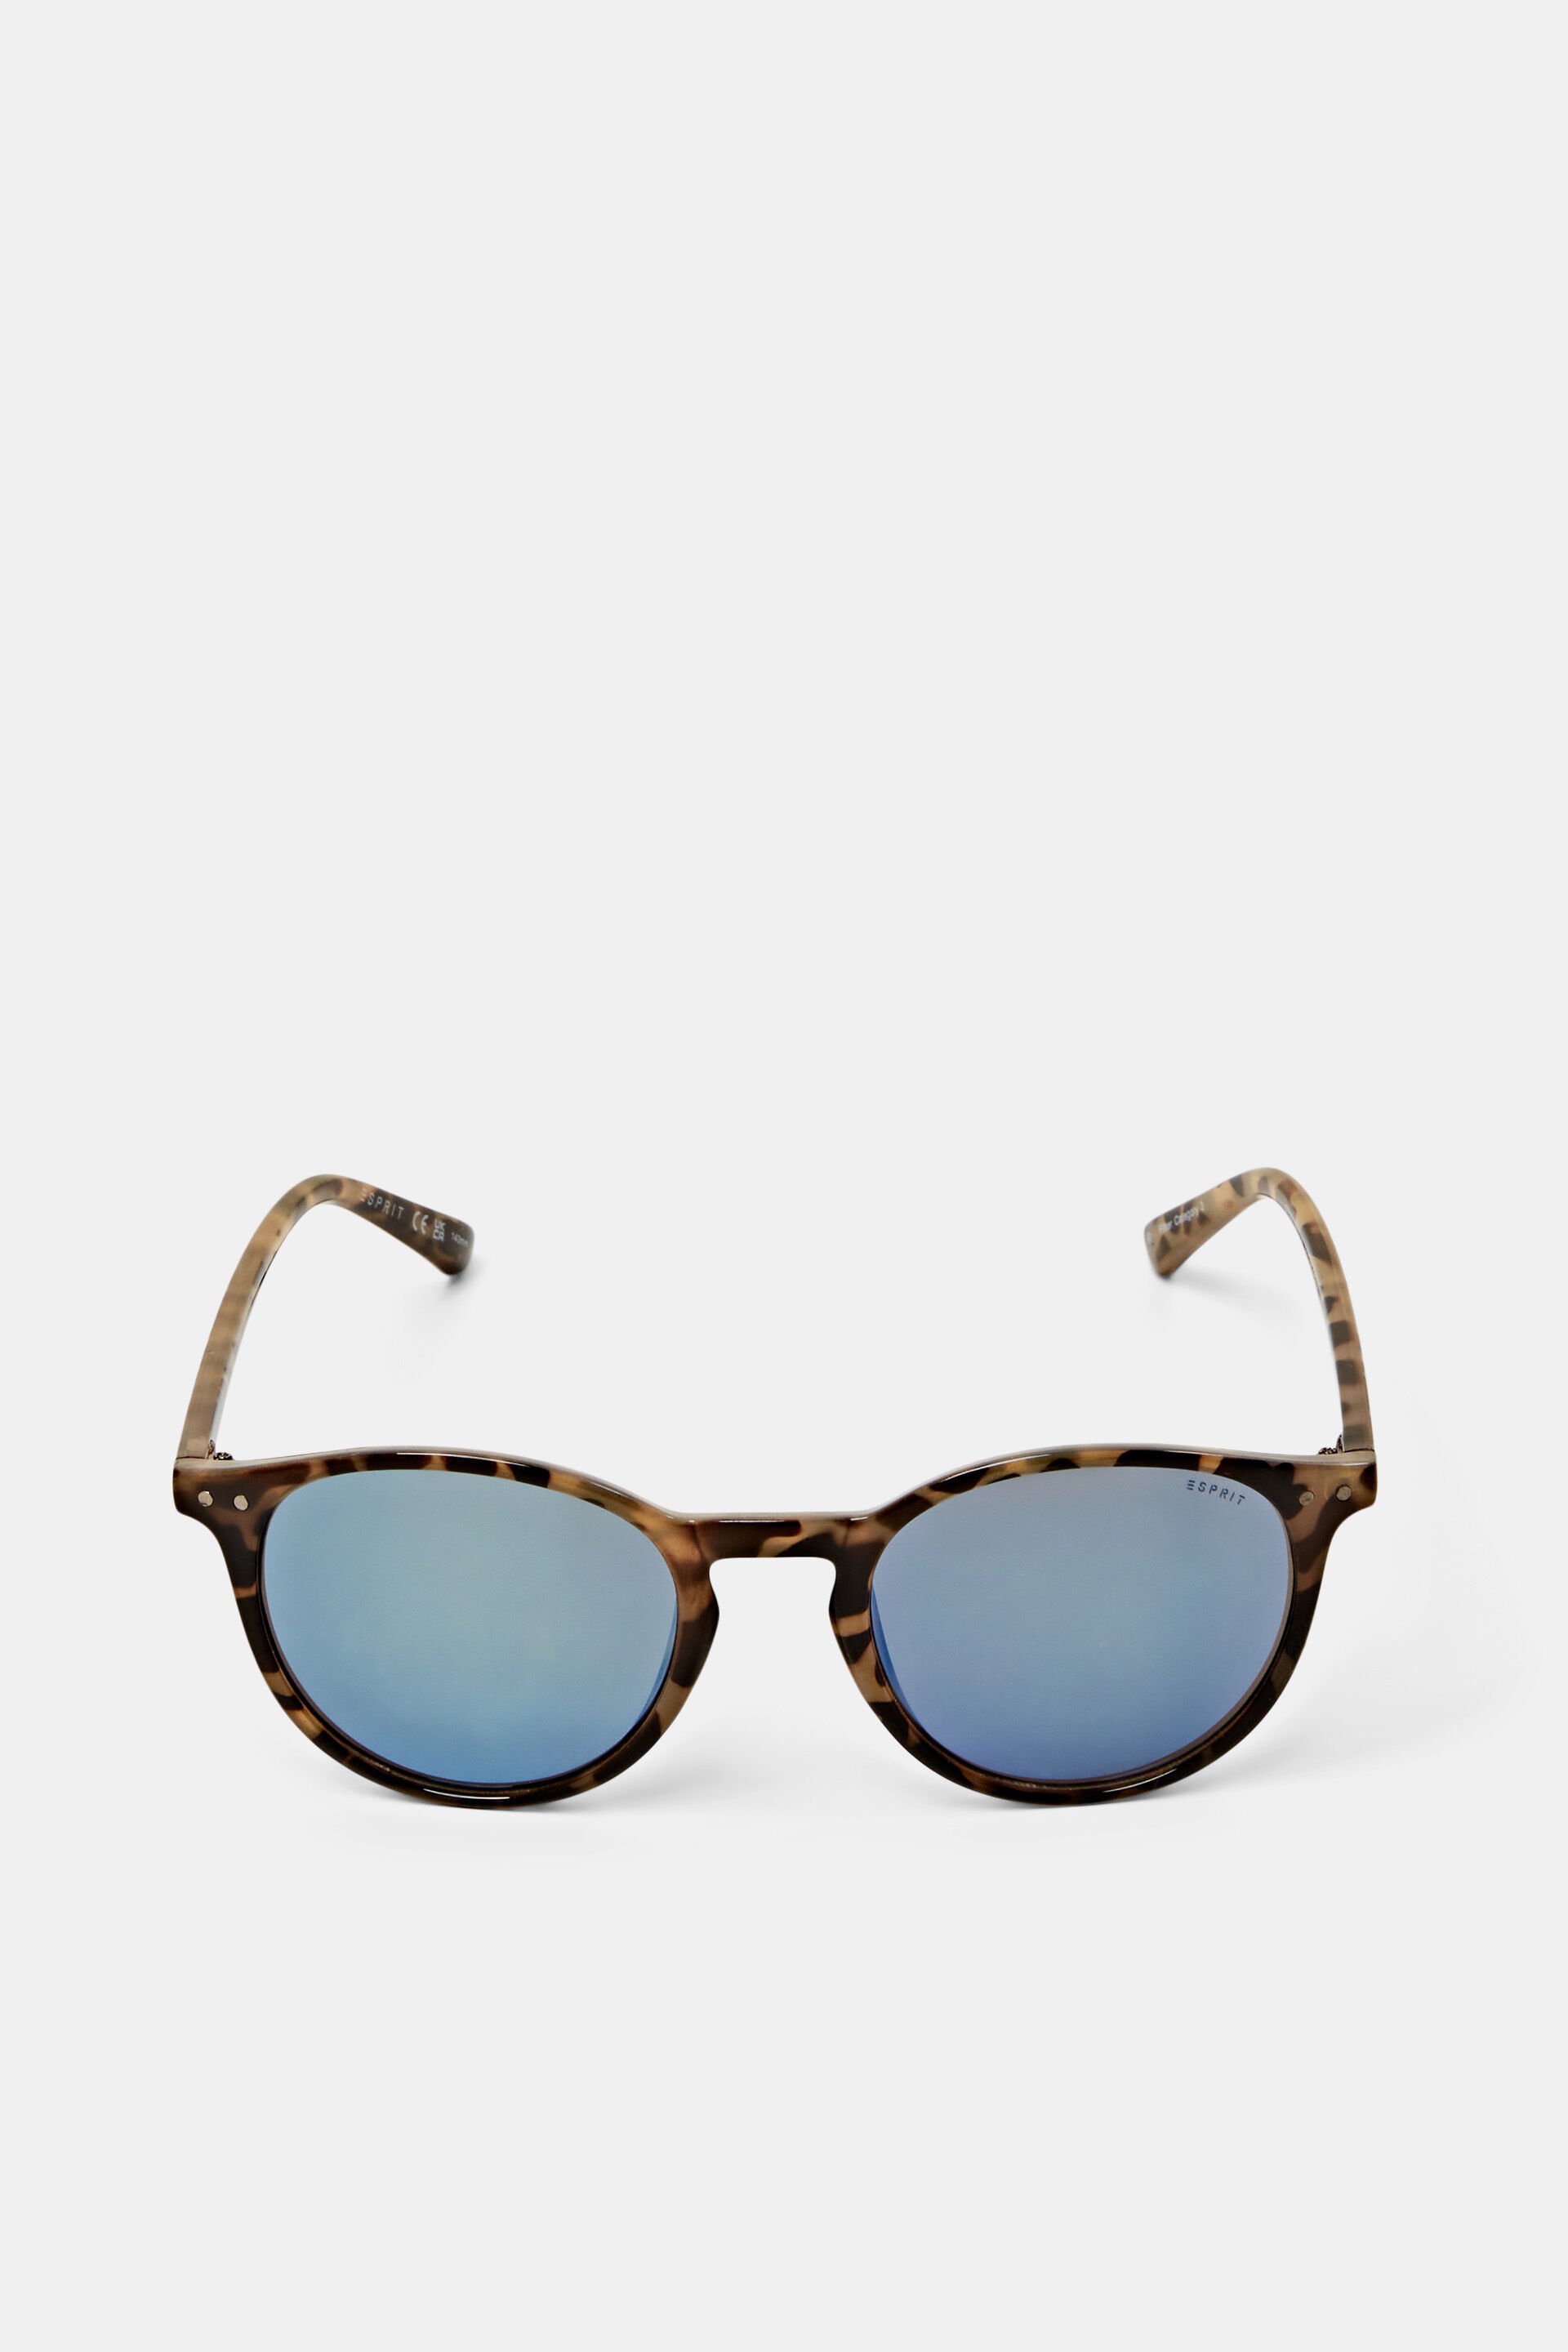 Esprit sunglasses mirrored lenses with Unisex